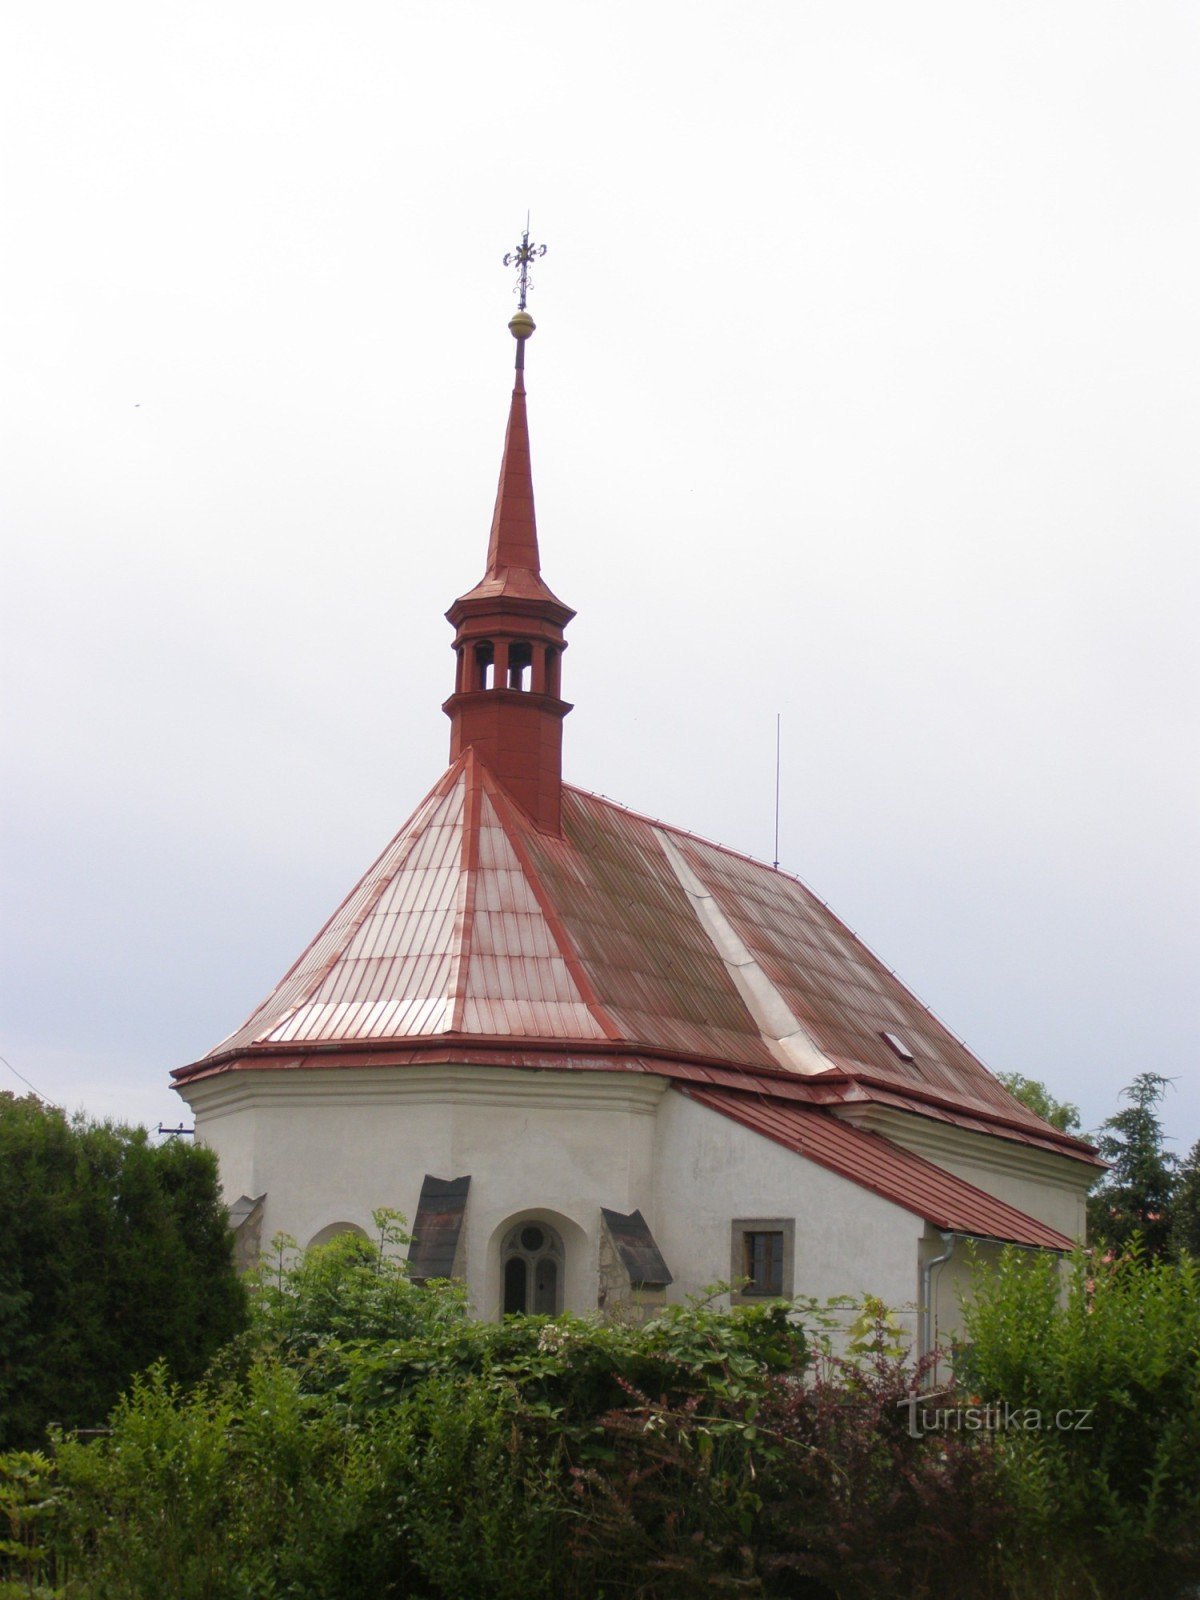 Mladějov - biserica Sf. Giljí cu clopotnița